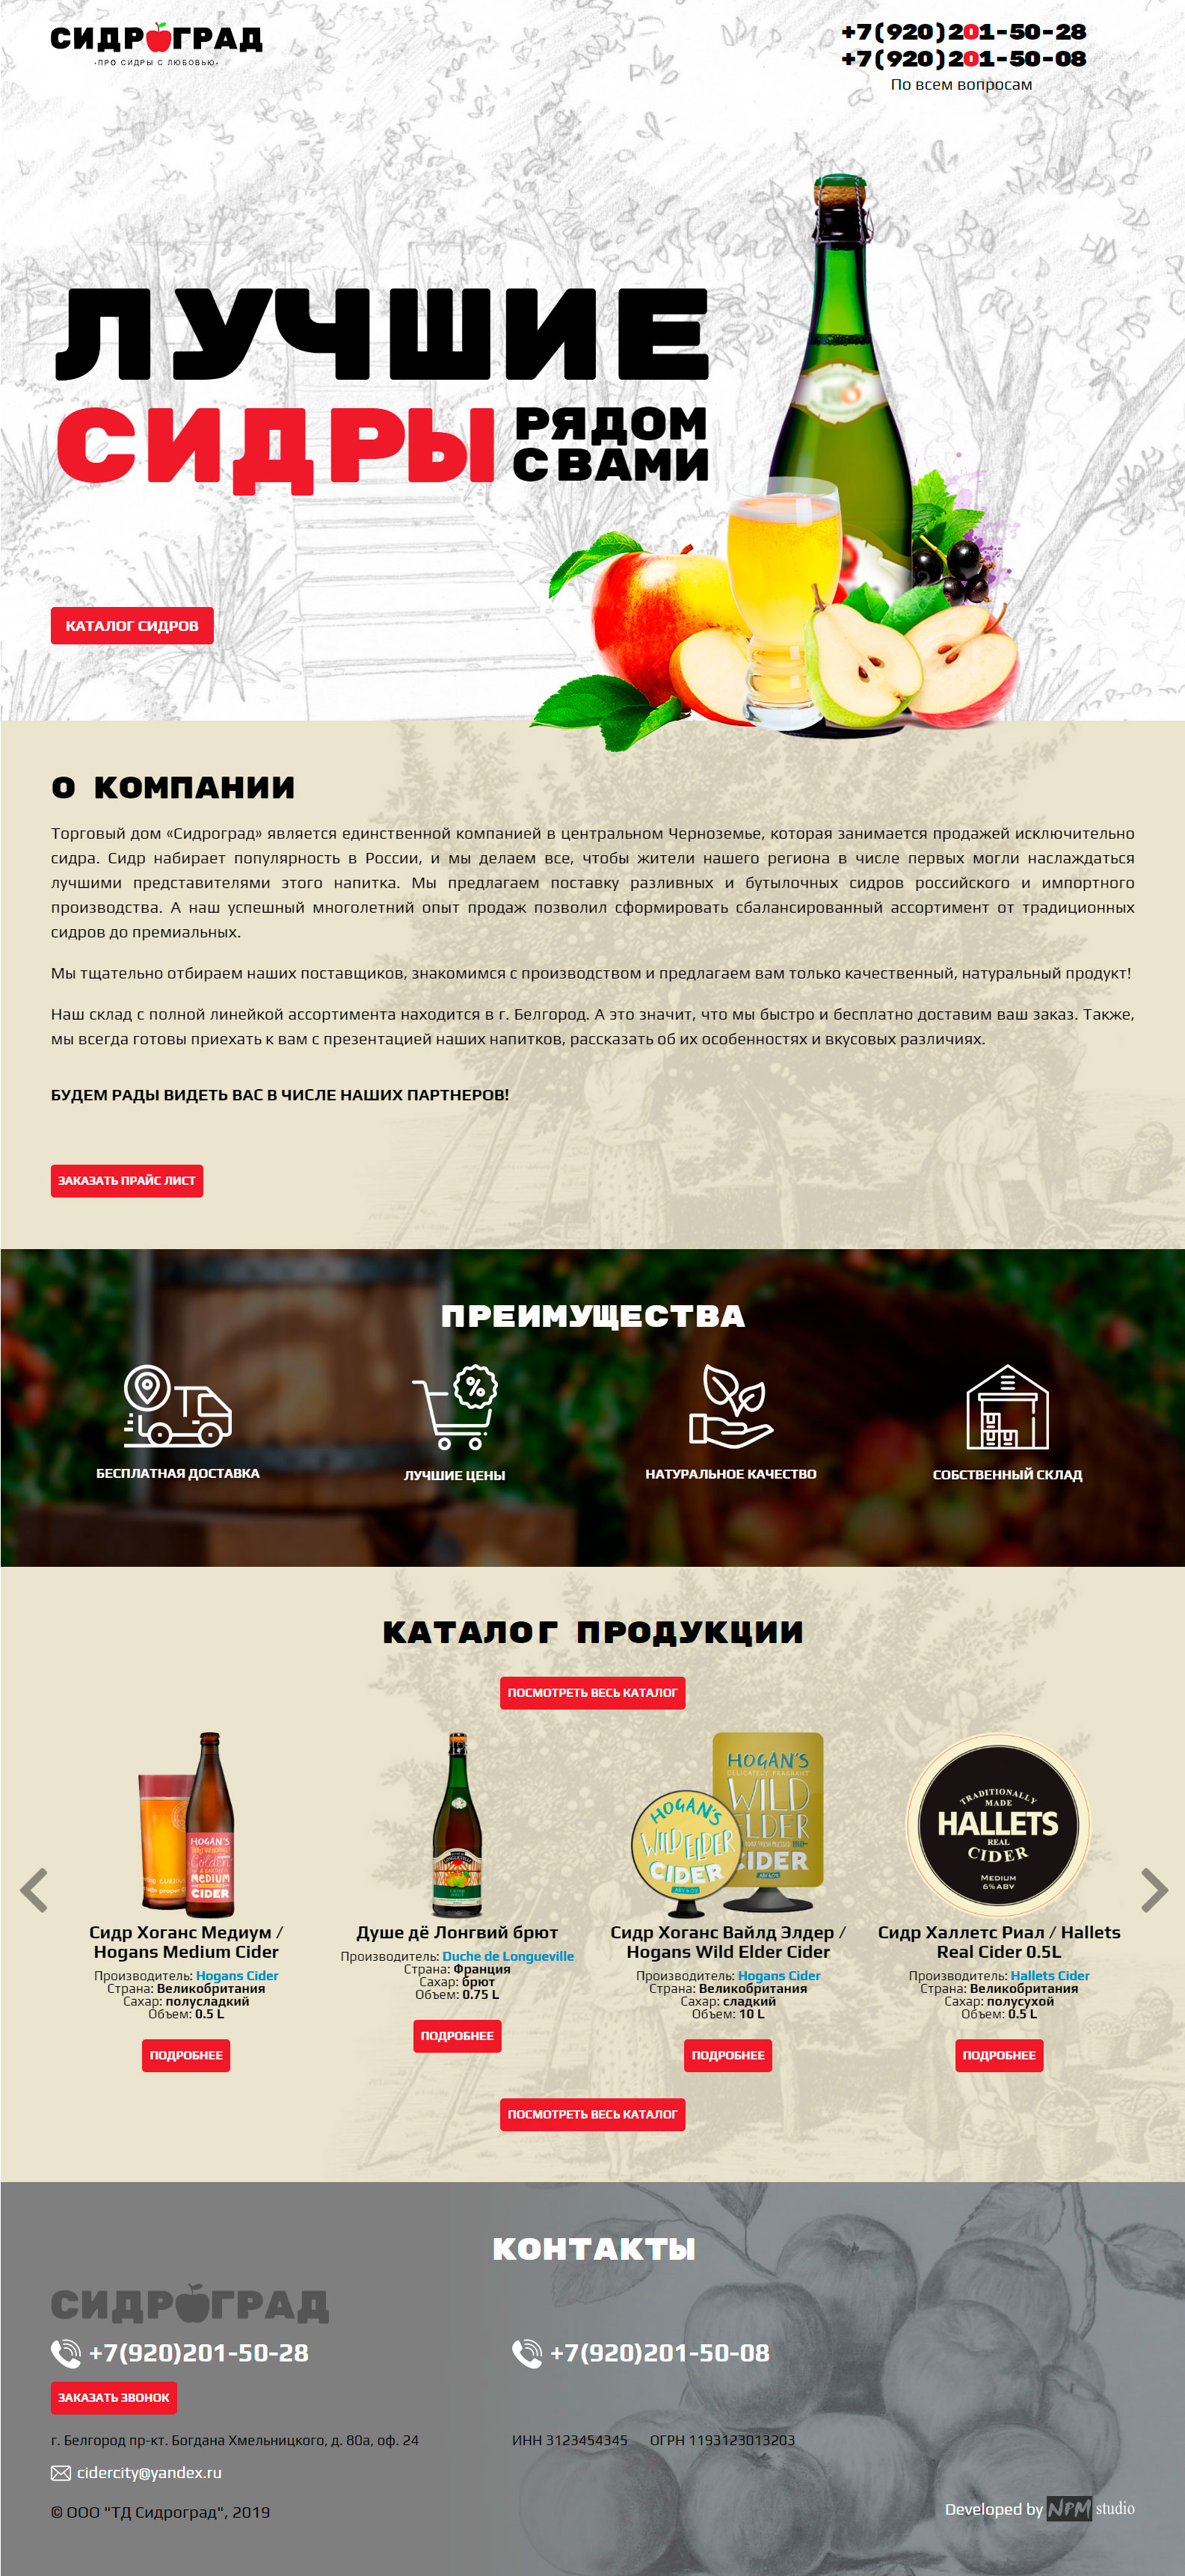 Сидроград дизайн главной страницы